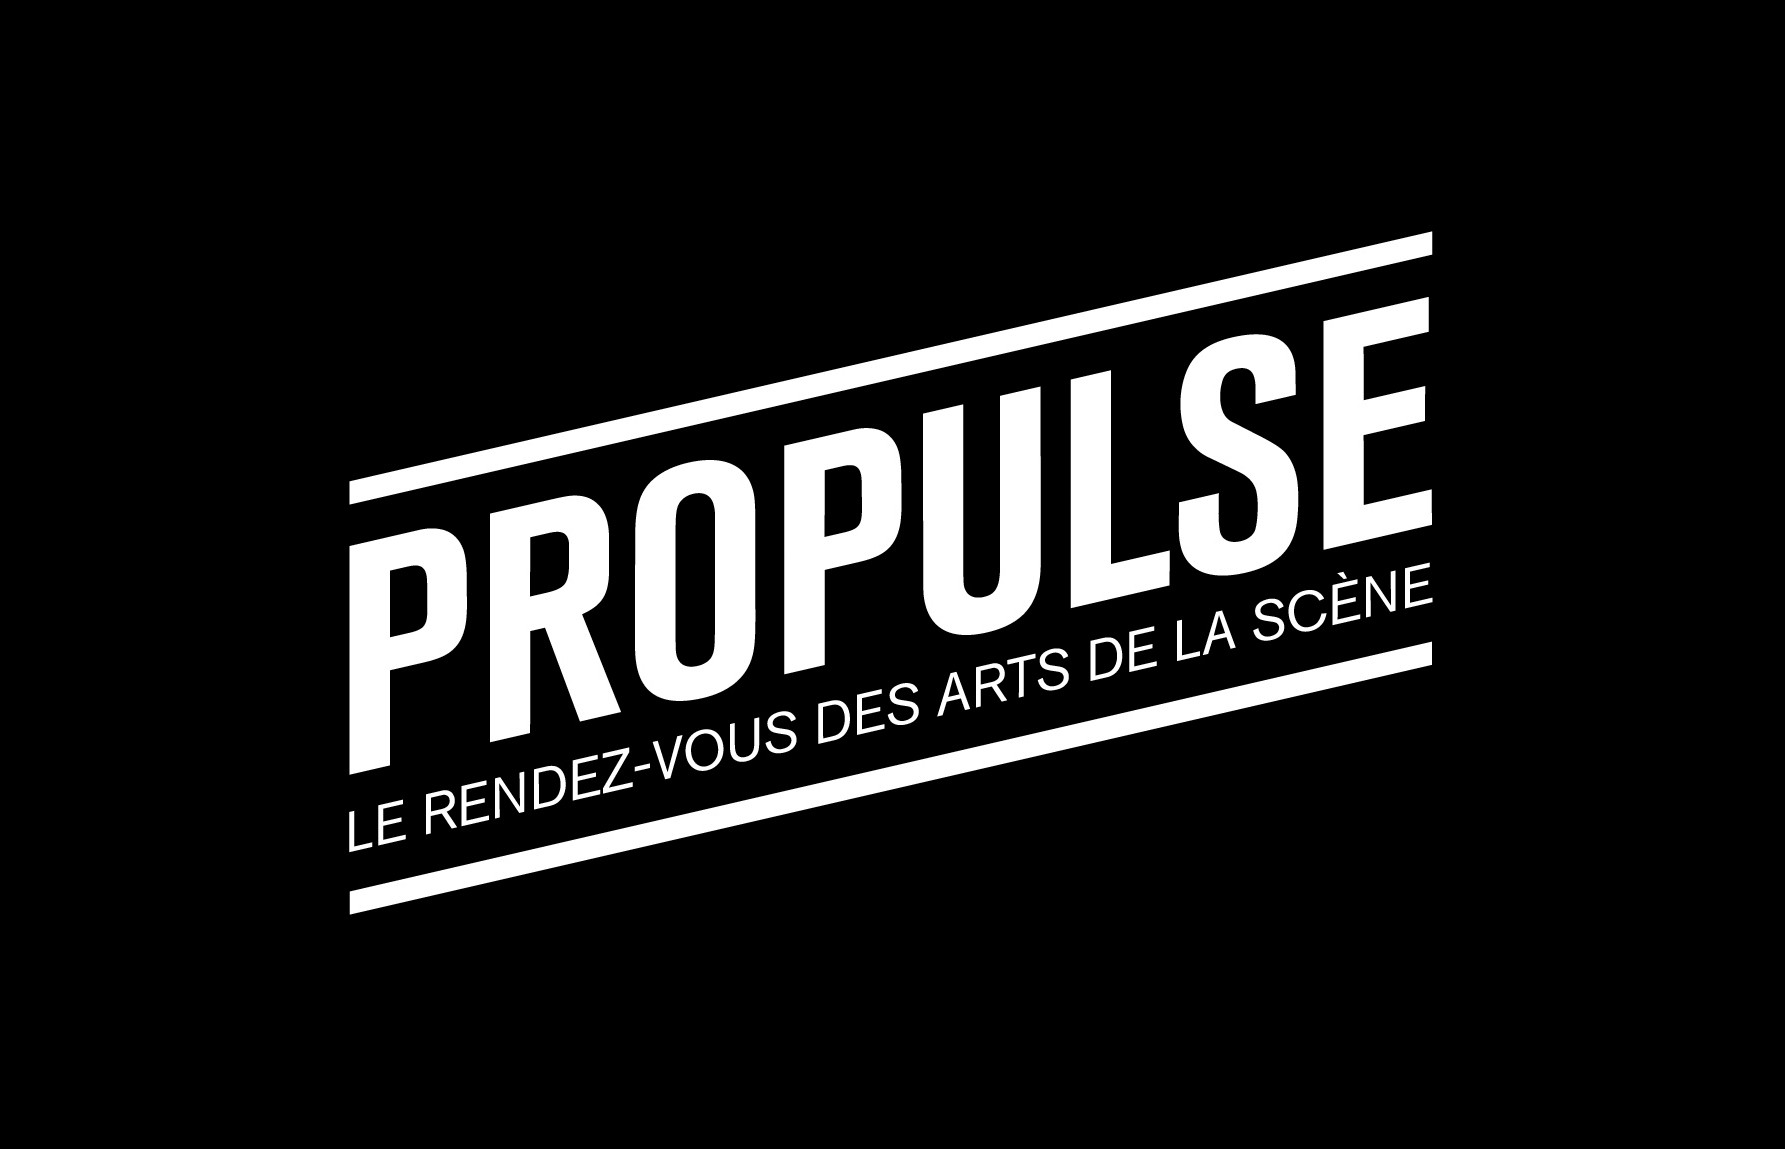 (CONCOURS) 2×2 places pour le Propulse Festival (05.02)